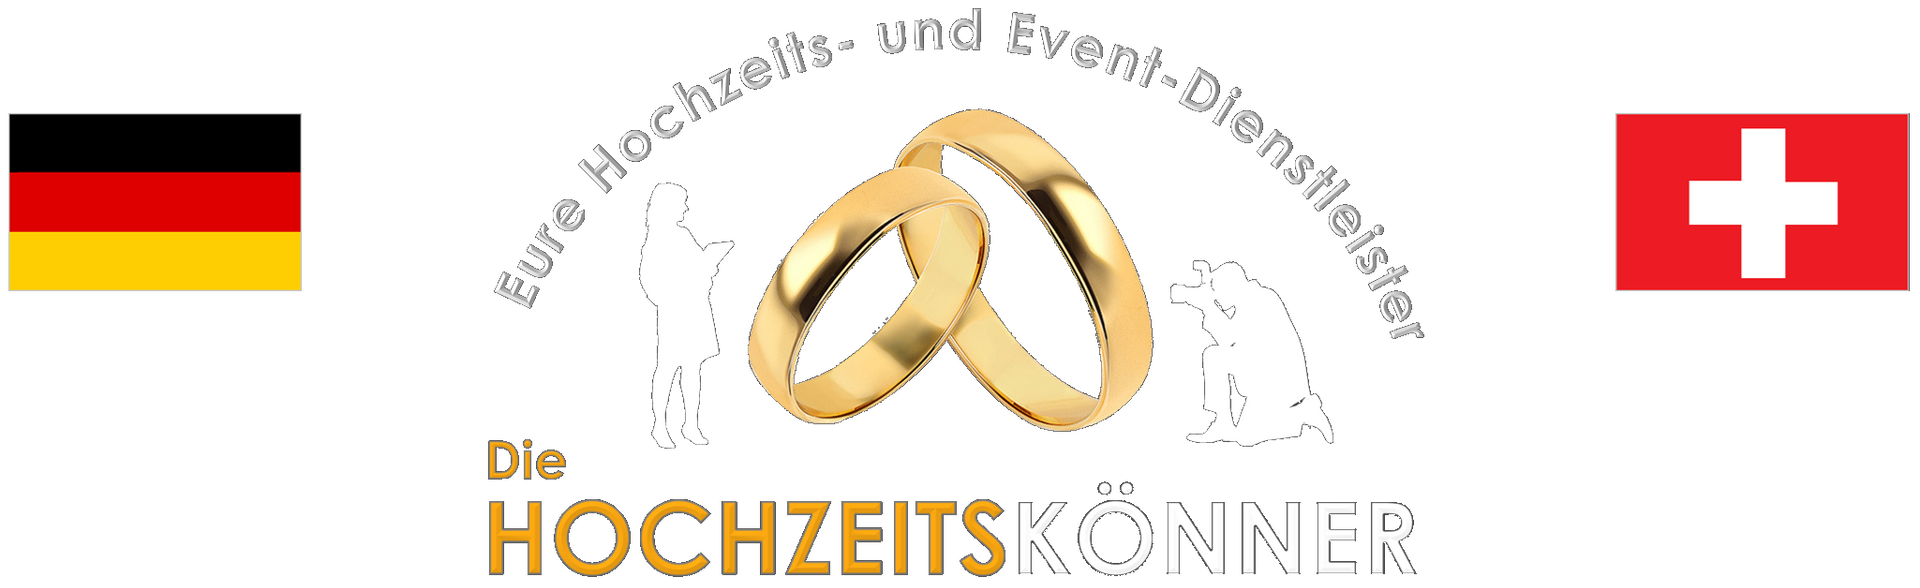 HOCHZEITSKÖNNER-Logo mit Flaggen